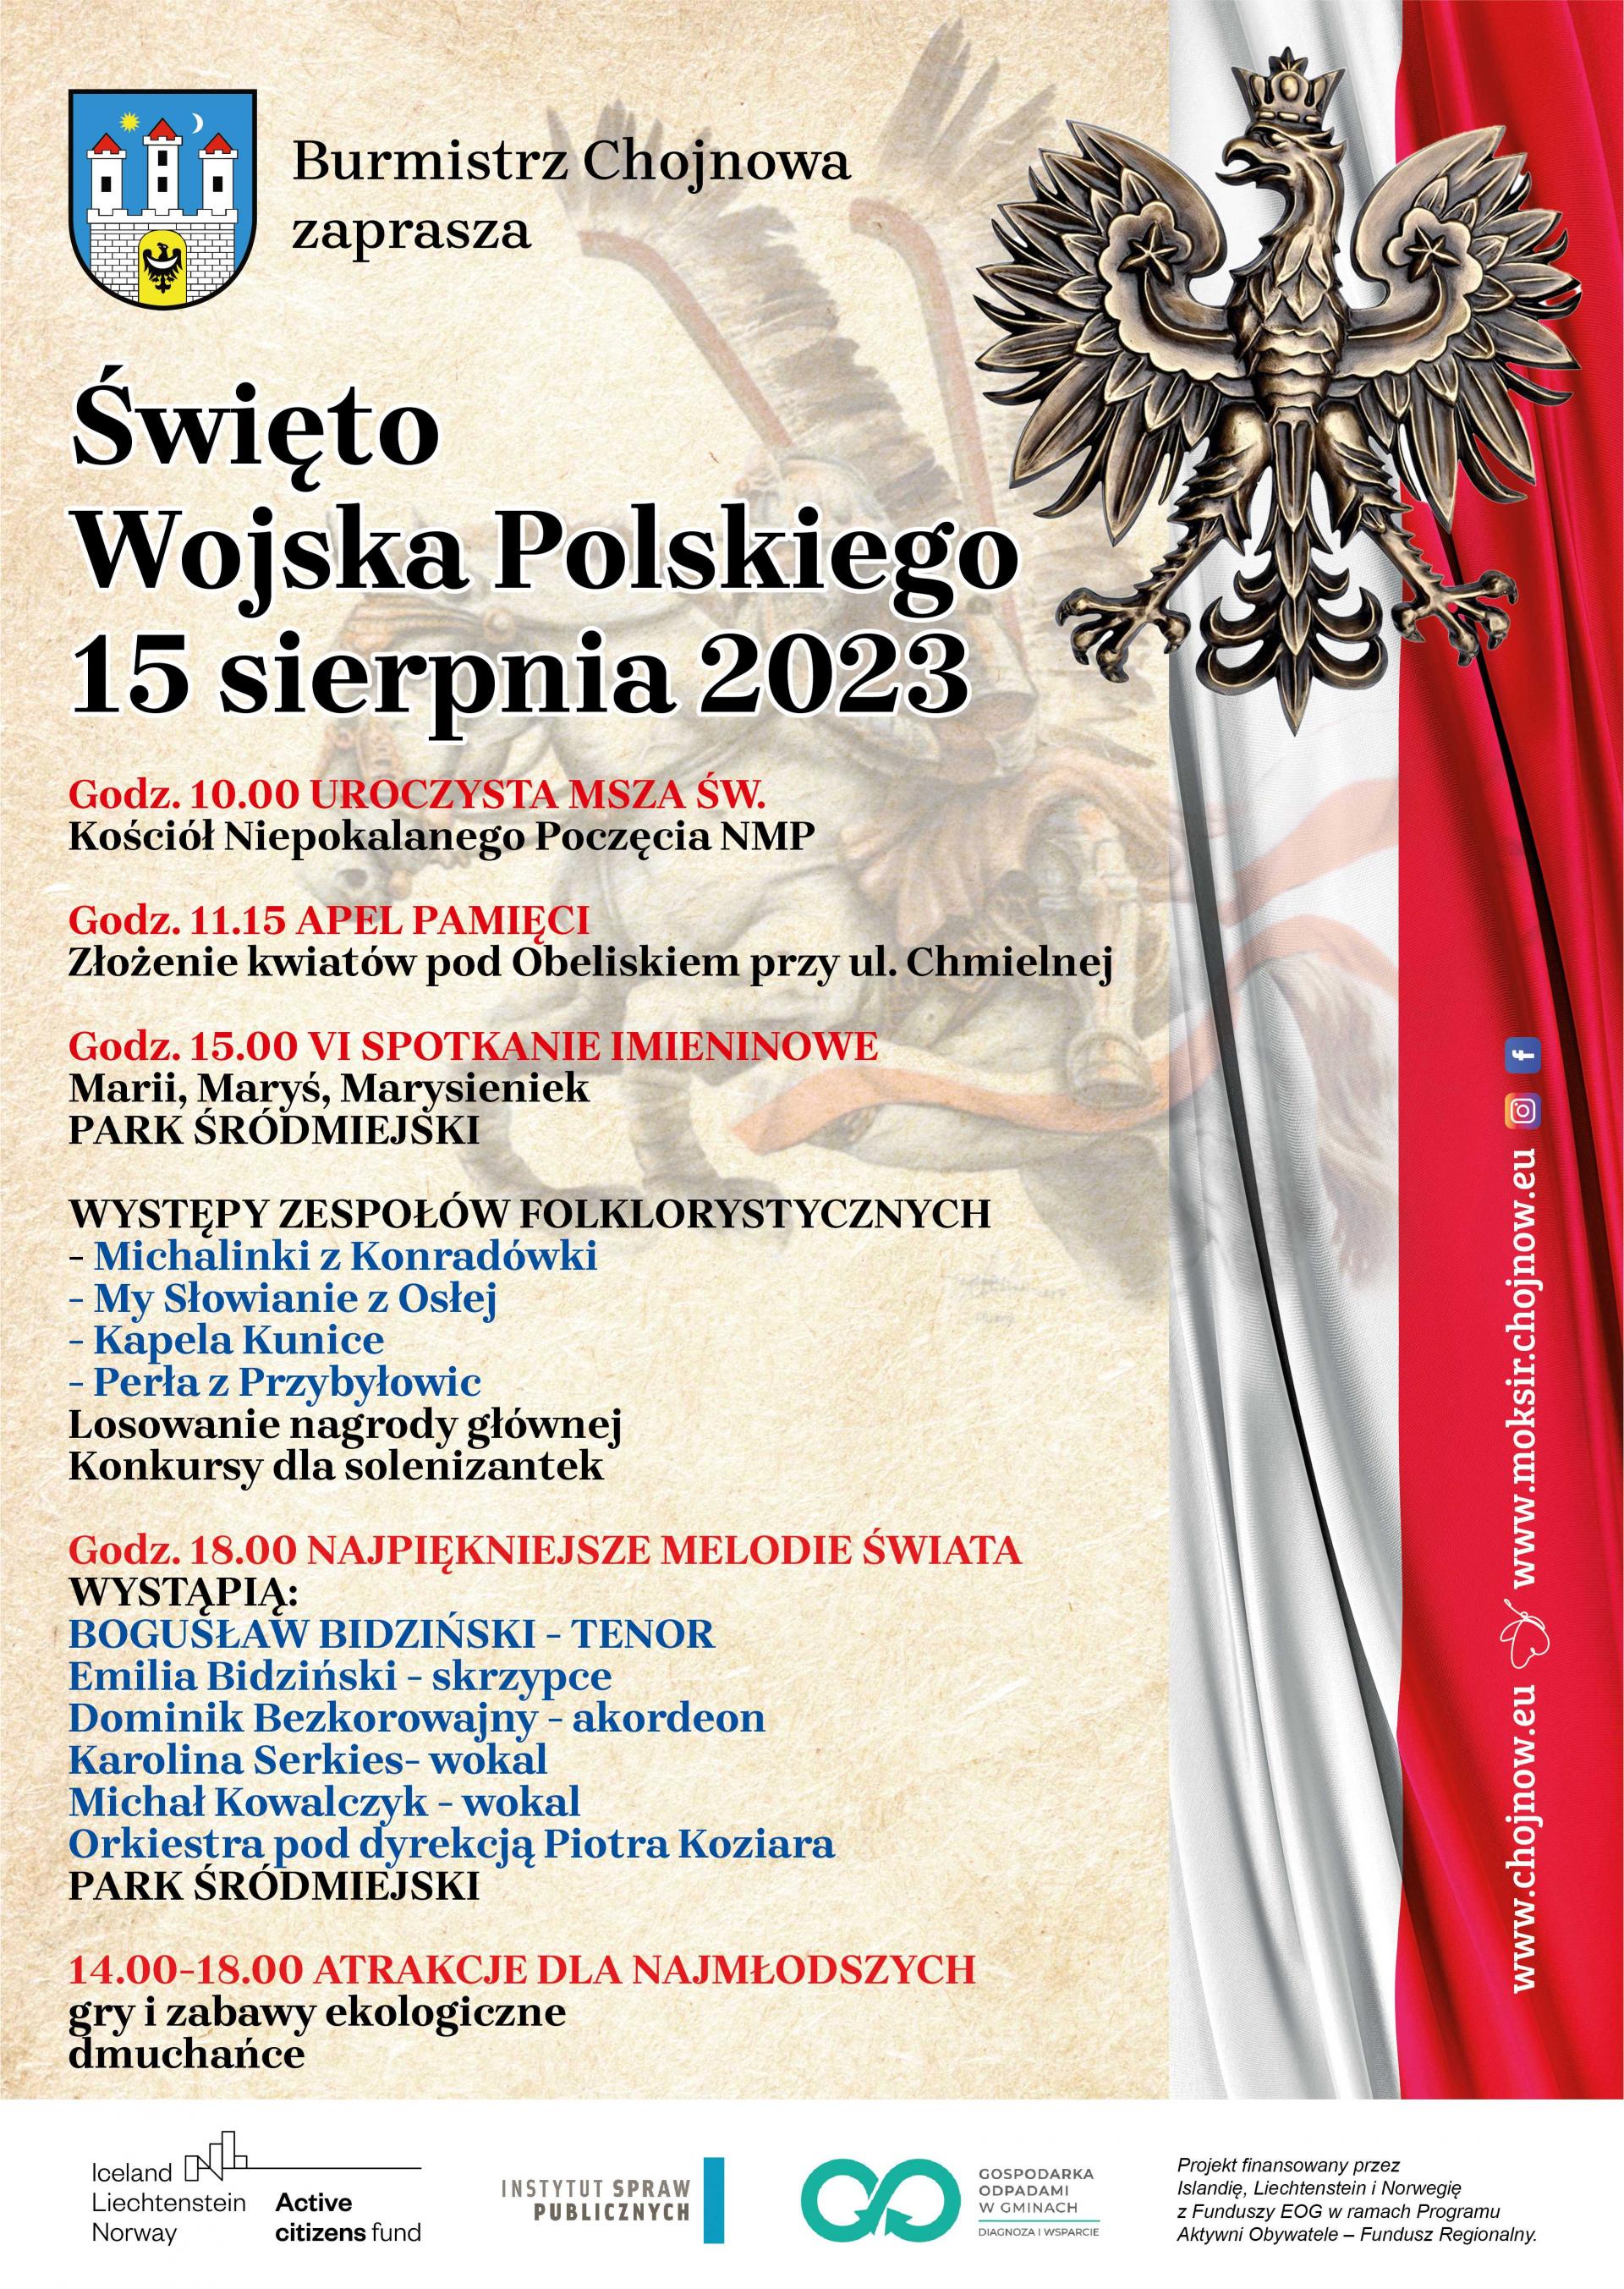 plakat z treścią dot. imprezy. Orzeł i flaga Polski